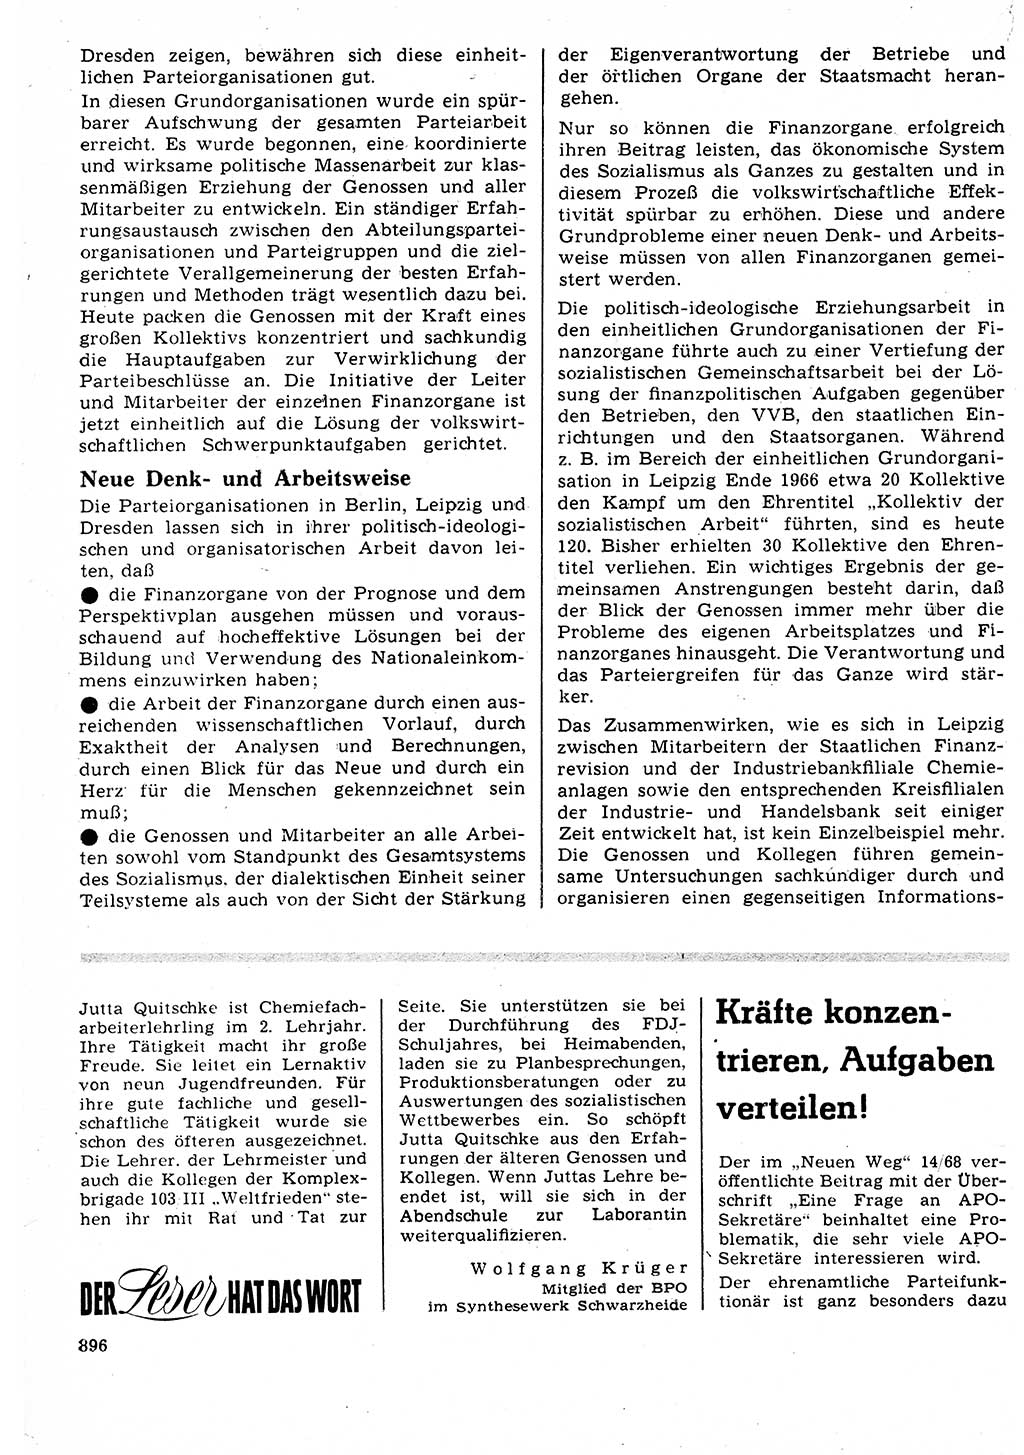 Neuer Weg (NW), Organ des Zentralkomitees (ZK) der SED (Sozialistische Einheitspartei Deutschlands) für Fragen des Parteilebens, 23. Jahrgang [Deutsche Demokratische Republik (DDR)] 1968, Seite 880 (NW ZK SED DDR 1968, S. 880)